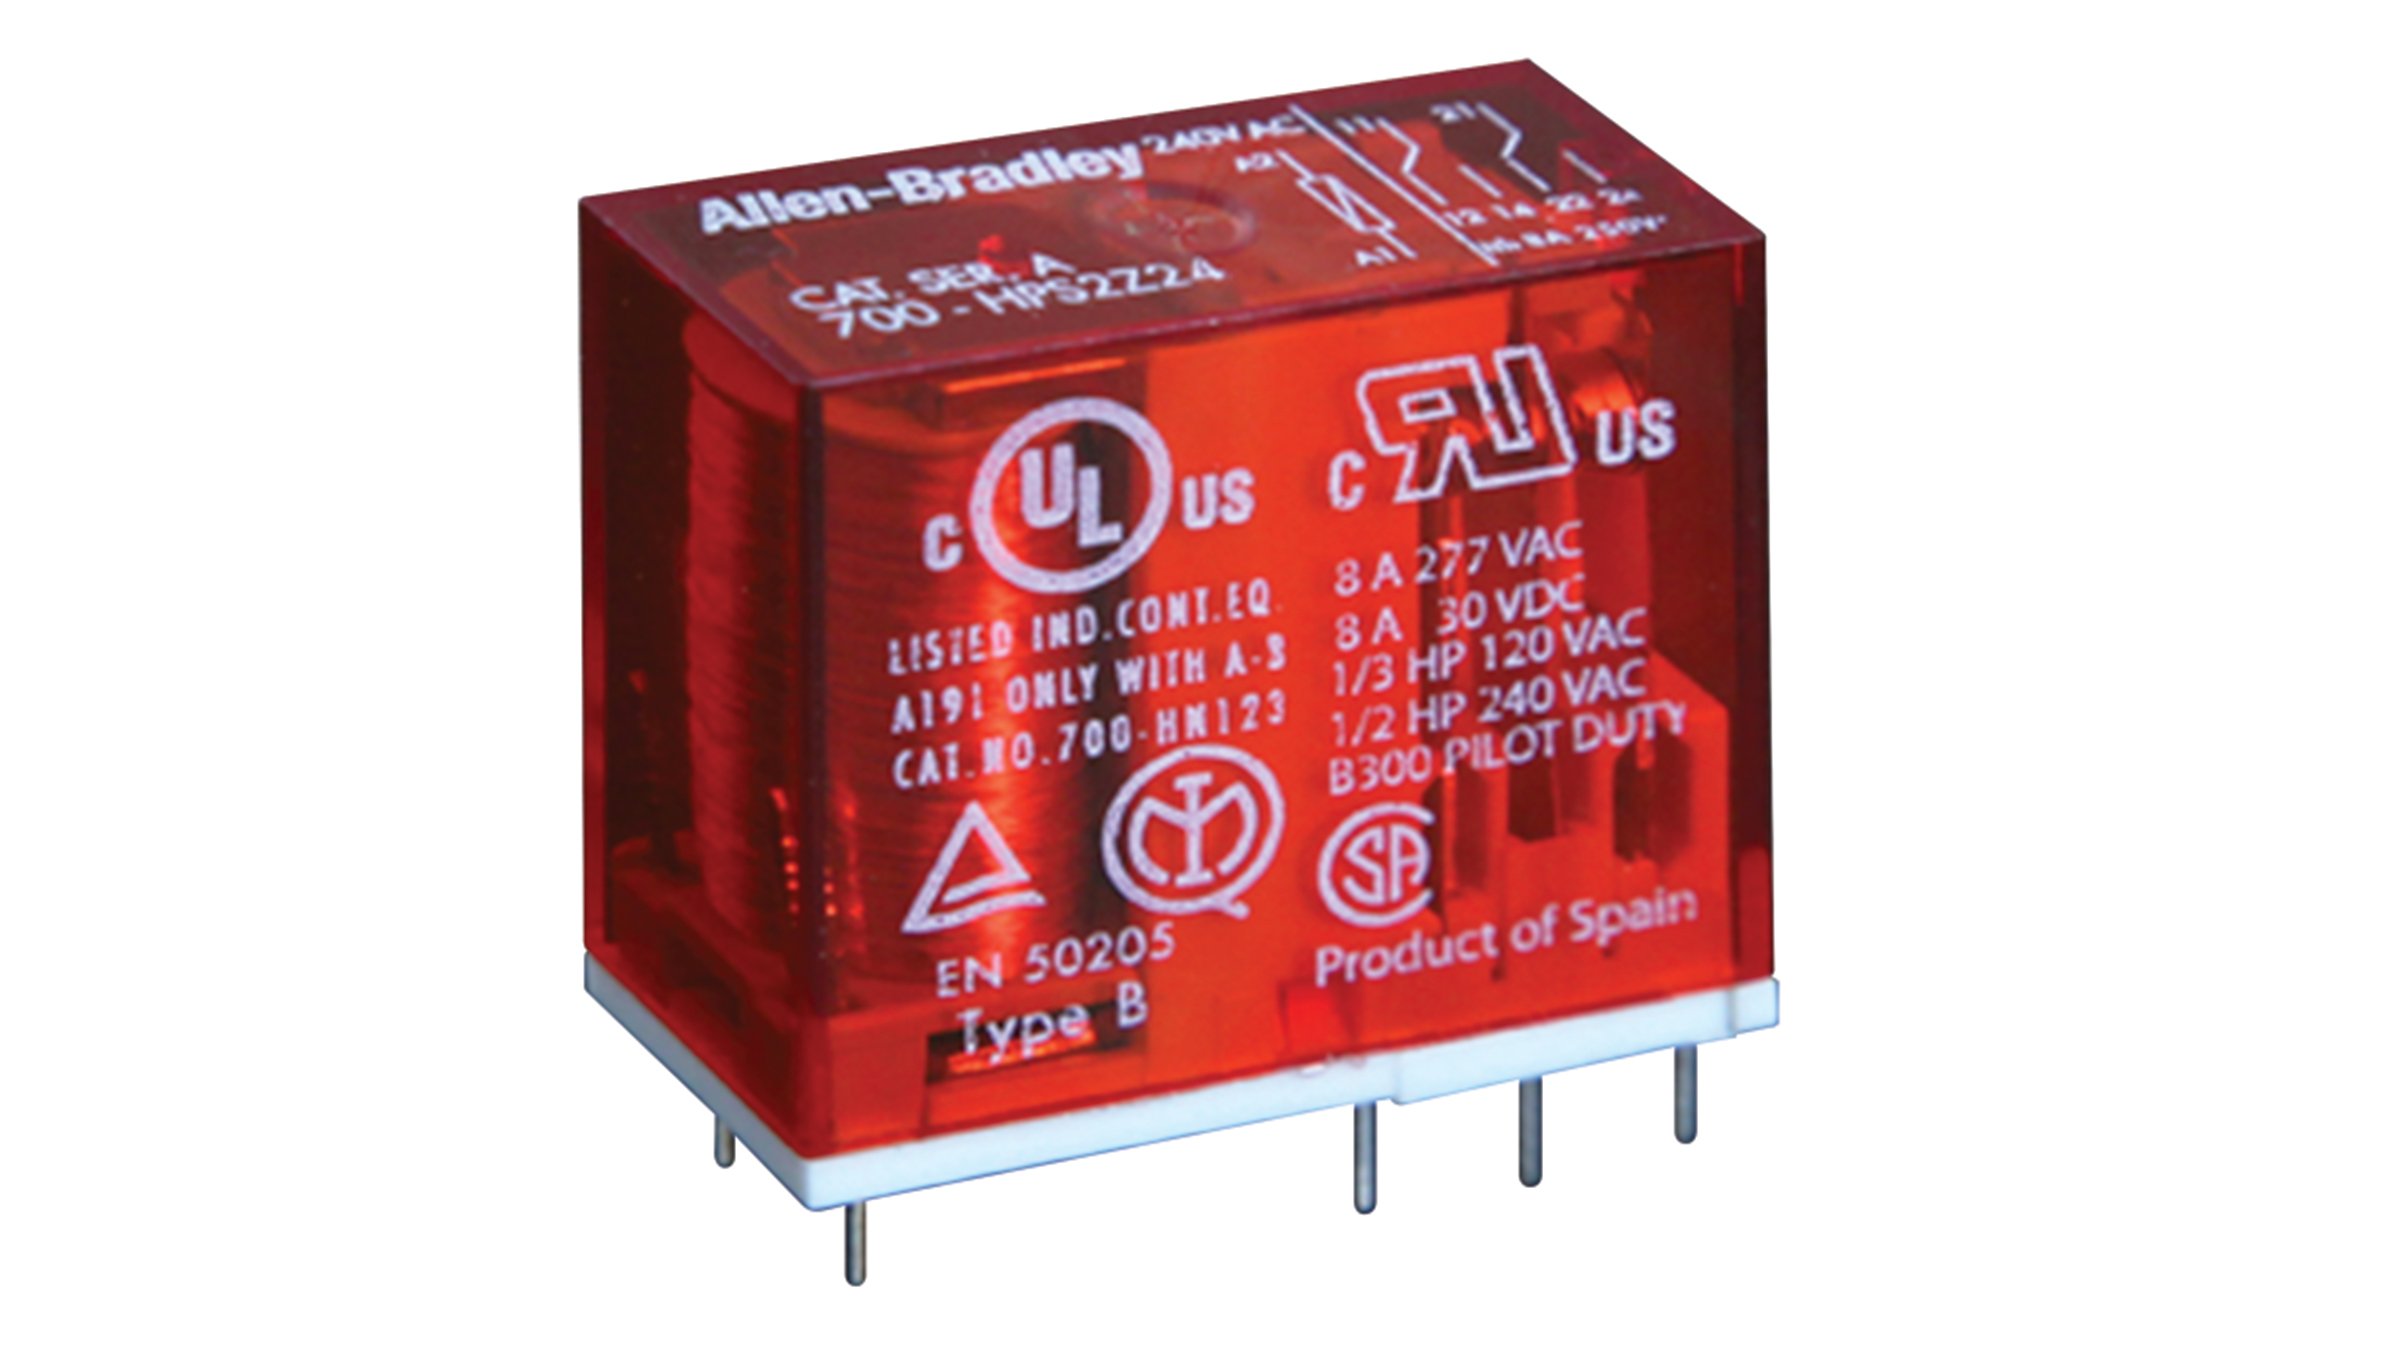 Allen-Bradley PCB-Leiterplatten-Sicherheitssteuerungsrelais der Serie 700-HPS verfügen über roter Abdeckung mit 8 zwangsgeführte Kontakte, die für Sicherheitsschaltkreise erforderlich sind